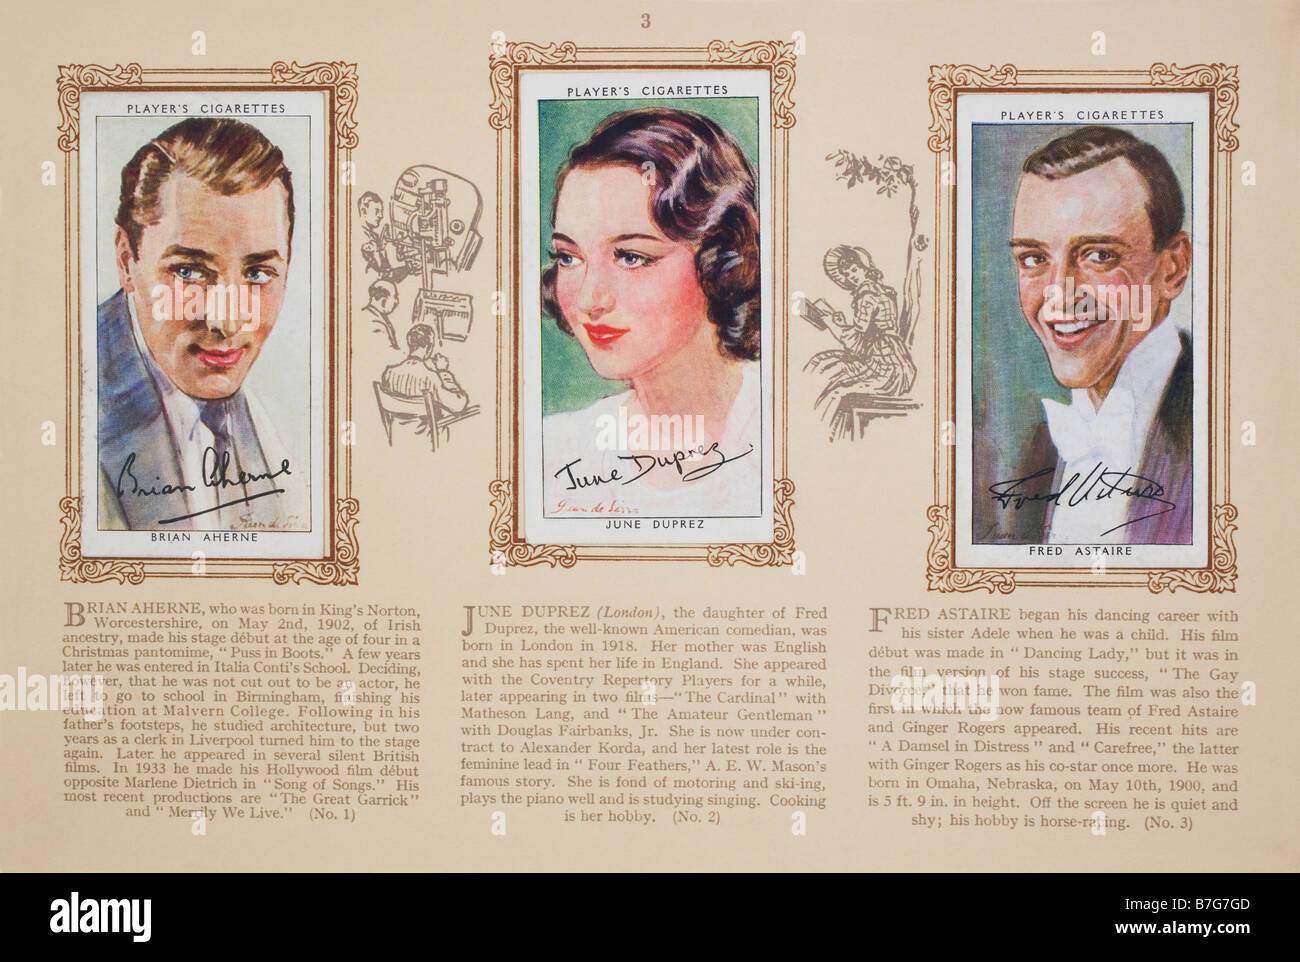 Tarjeta de cigarrillos álbum publicado en 1938 por John Player & Sons con ilustraciones de estrellas de cine. 3a serie Foto de stock